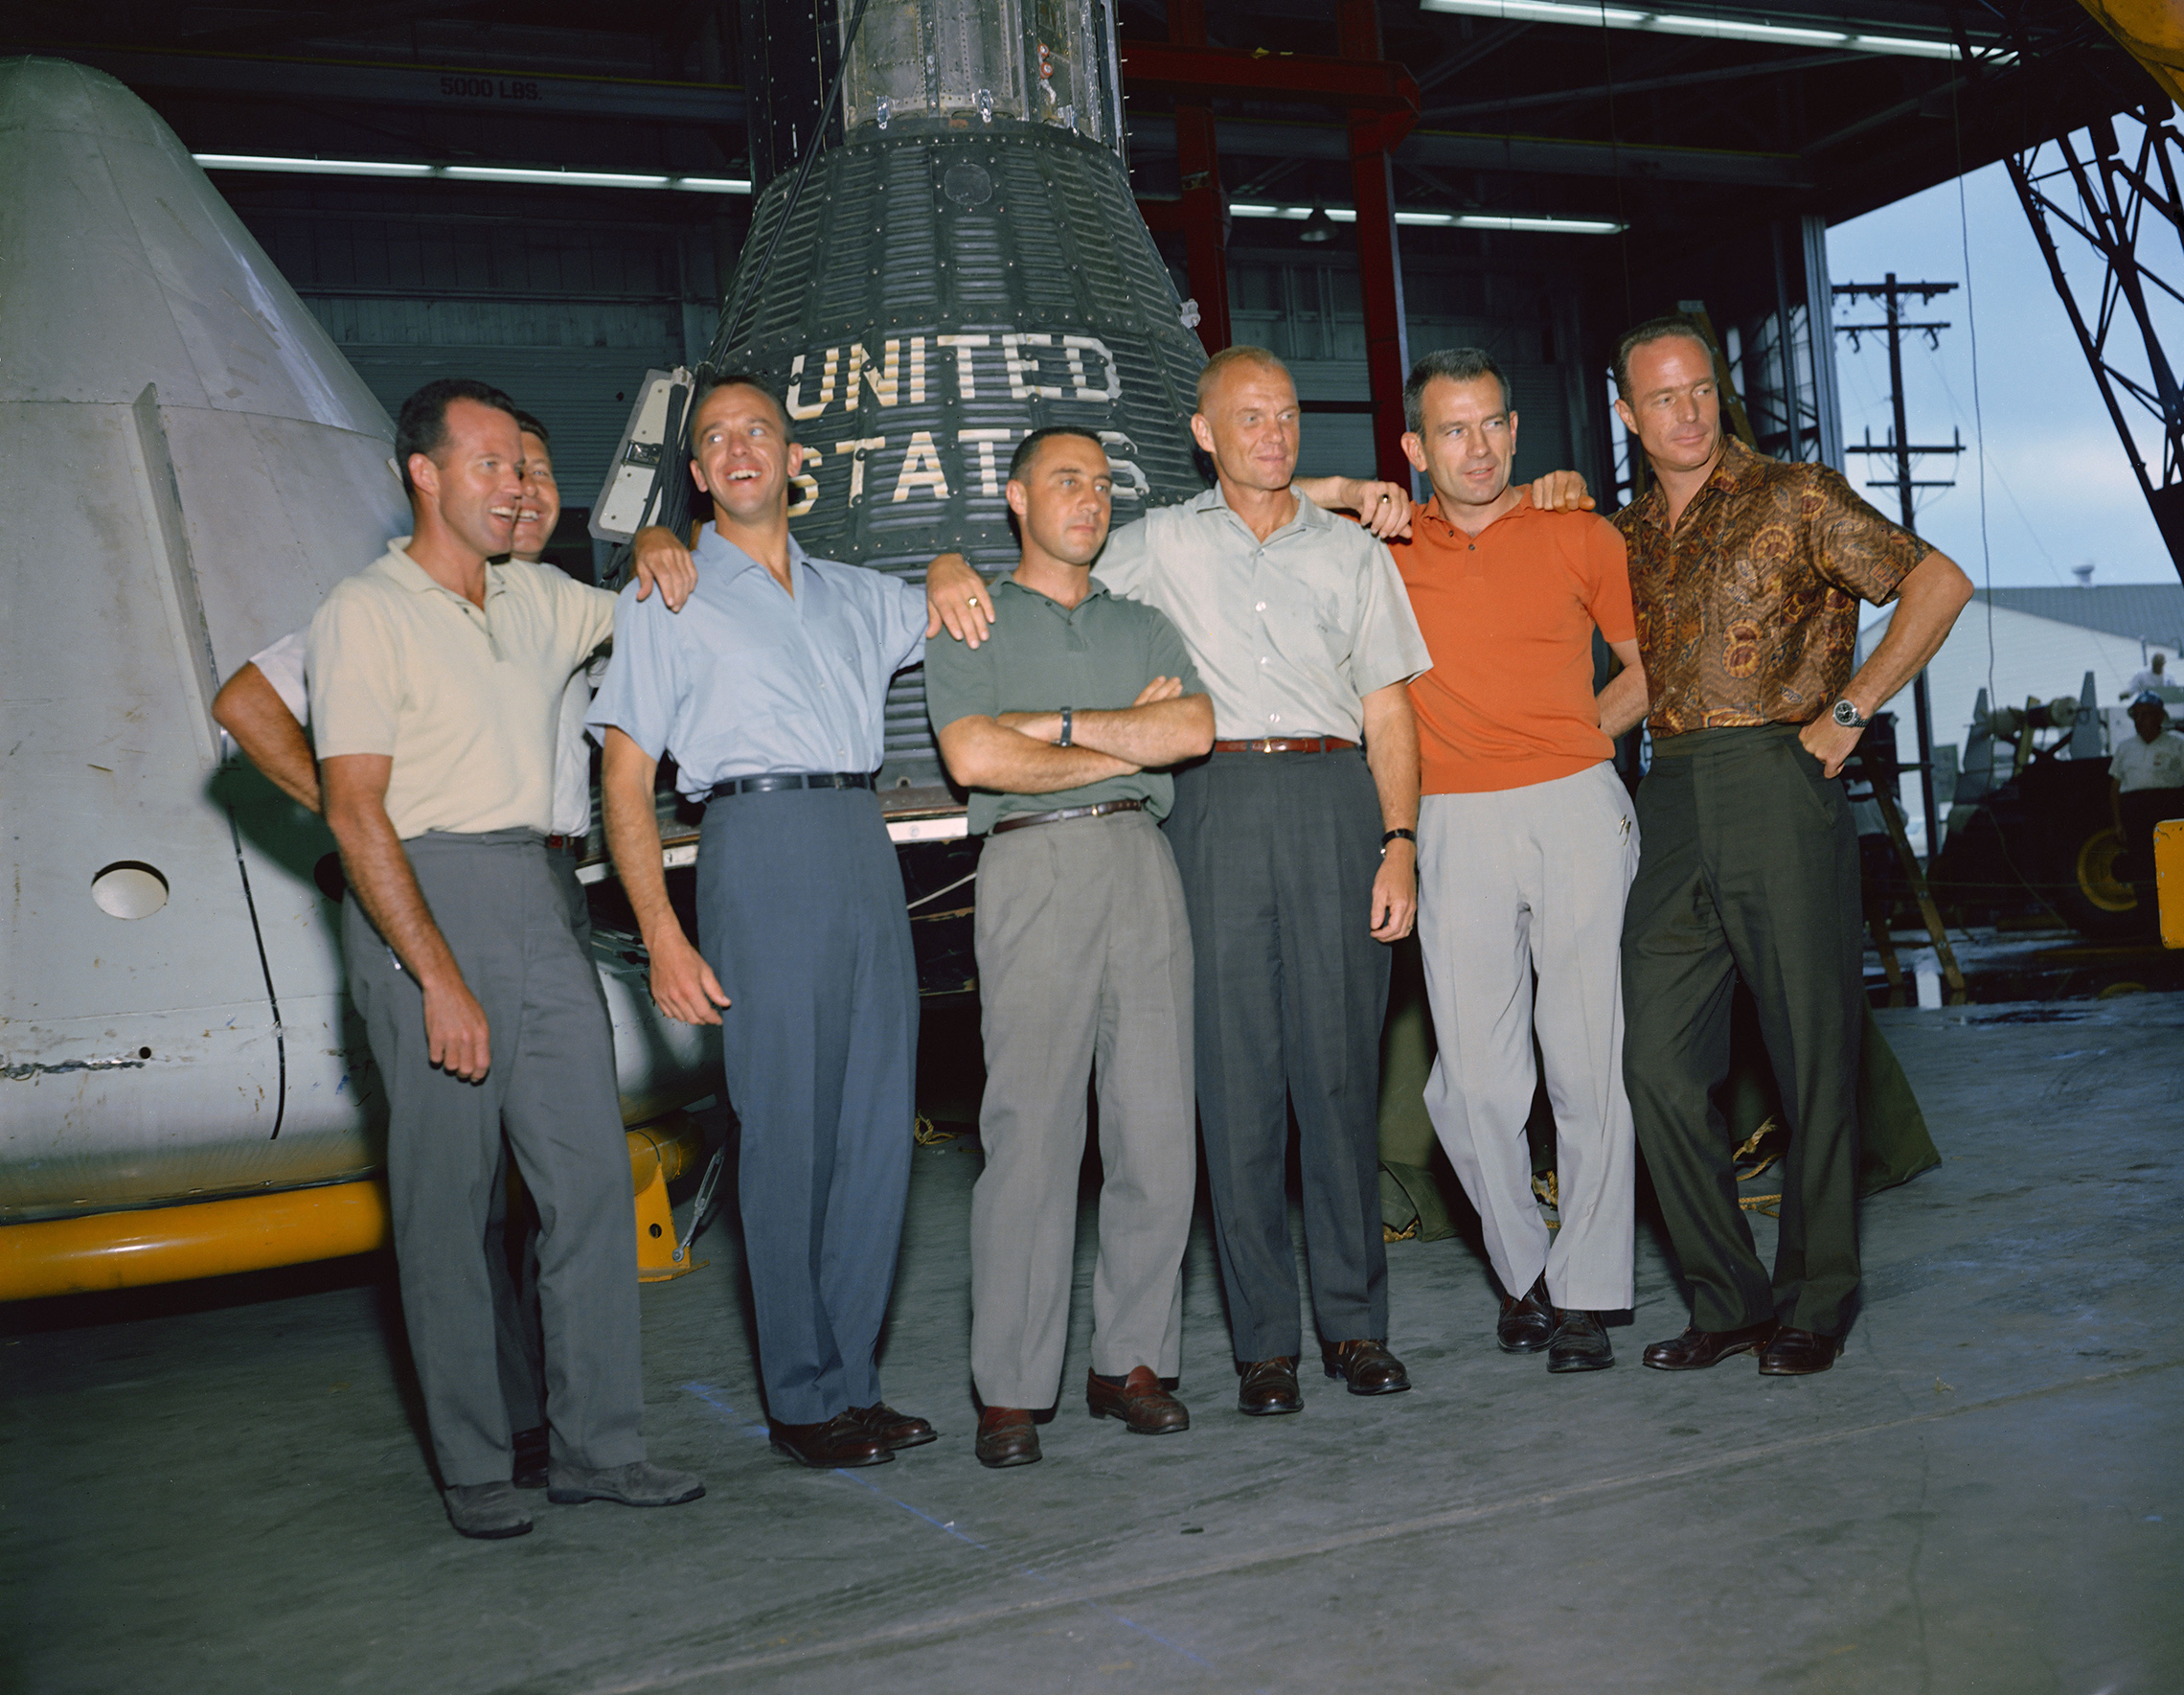 den 9. April 1959 annoncerede NASAs første administrator, Dr. Keith Glennan, navnene på agenturets første gruppe astronauter på en pressekonference i USA, D. C. nu kendt som de oprindelige syv, de omfattede tre Flådeflyvere, M. Scott Carpenter, Valter M. Schirra Jr. og Alan B. Shepard Jr.; tre luftvåbenpiloter, L. Gordon Cooper Jr., Virgil I. (Gus) grissomog Donald K. (Deke) Slayton; sammen med Marine Corps aviator John H. Glenn Jr.blev dette gruppefoto af de originale Mercury astronauter taget i juni 1963 på bemandet Rumfartøjscenter (MSC), nu Johnson Space Center, i Houston. Astronauterne er fra venstre mod højre: Cooper, Schirra, Shepard, Grissom, Glenn, Slayton og Carpenter. Project Mercury blev NASAs første store virksomhed. Programmets mål var at placere et menneskeligt vurderet rumfartøj i kredsløb omkring Jorden, observere astronauternes præstationer under sådanne forhold og sikkert genvinde astronauten og rumfartøjet. Mercury-flyene beviste, at mennesker kunne leve og arbejde i rummet, og banede vejen for Gemini-og Apollo-programmerne såvel som for al yderligere menneskelig rumflyvning. (NASA)'s first administrator, Dr. Keith Glennan, announced the names of the agency's first group of astronauts at a news conference in Washington, D.C. Now known as the "Original Seven," they included three Naval aviators, M. Scott Carpenter, Walter M. Schirra Jr., and Alan B. Shepard Jr.; three Air Force pilots, L. Gordon Cooper Jr., Virgil I. (Gus) Grissom, and Donald K. (Deke) Slayton; along with Marine Corps aviator John H. Glenn Jr. This group photo of the original Mercury astronauts was taken in June 1963 at the Manned Spacecraft Center (MSC), now Johnson Space Center, in Houston, Texas. The astronauts are, left to right: Cooper, Schirra, Shepard, Grissom, Glenn, Slayton and Carpenter. Project Mercury became NASA's first major undertaking. The objectives of the program were to place a human-rated spacecraft into orbit around Earth, observe the astronauts' performance in such conditions and safely recover the astronaut and the spacecraft. The Mercury flights proved that humans could live and work in space, and paved the way for the Gemini and Apollo programs as well as for all further human spaceflight. (NASA)